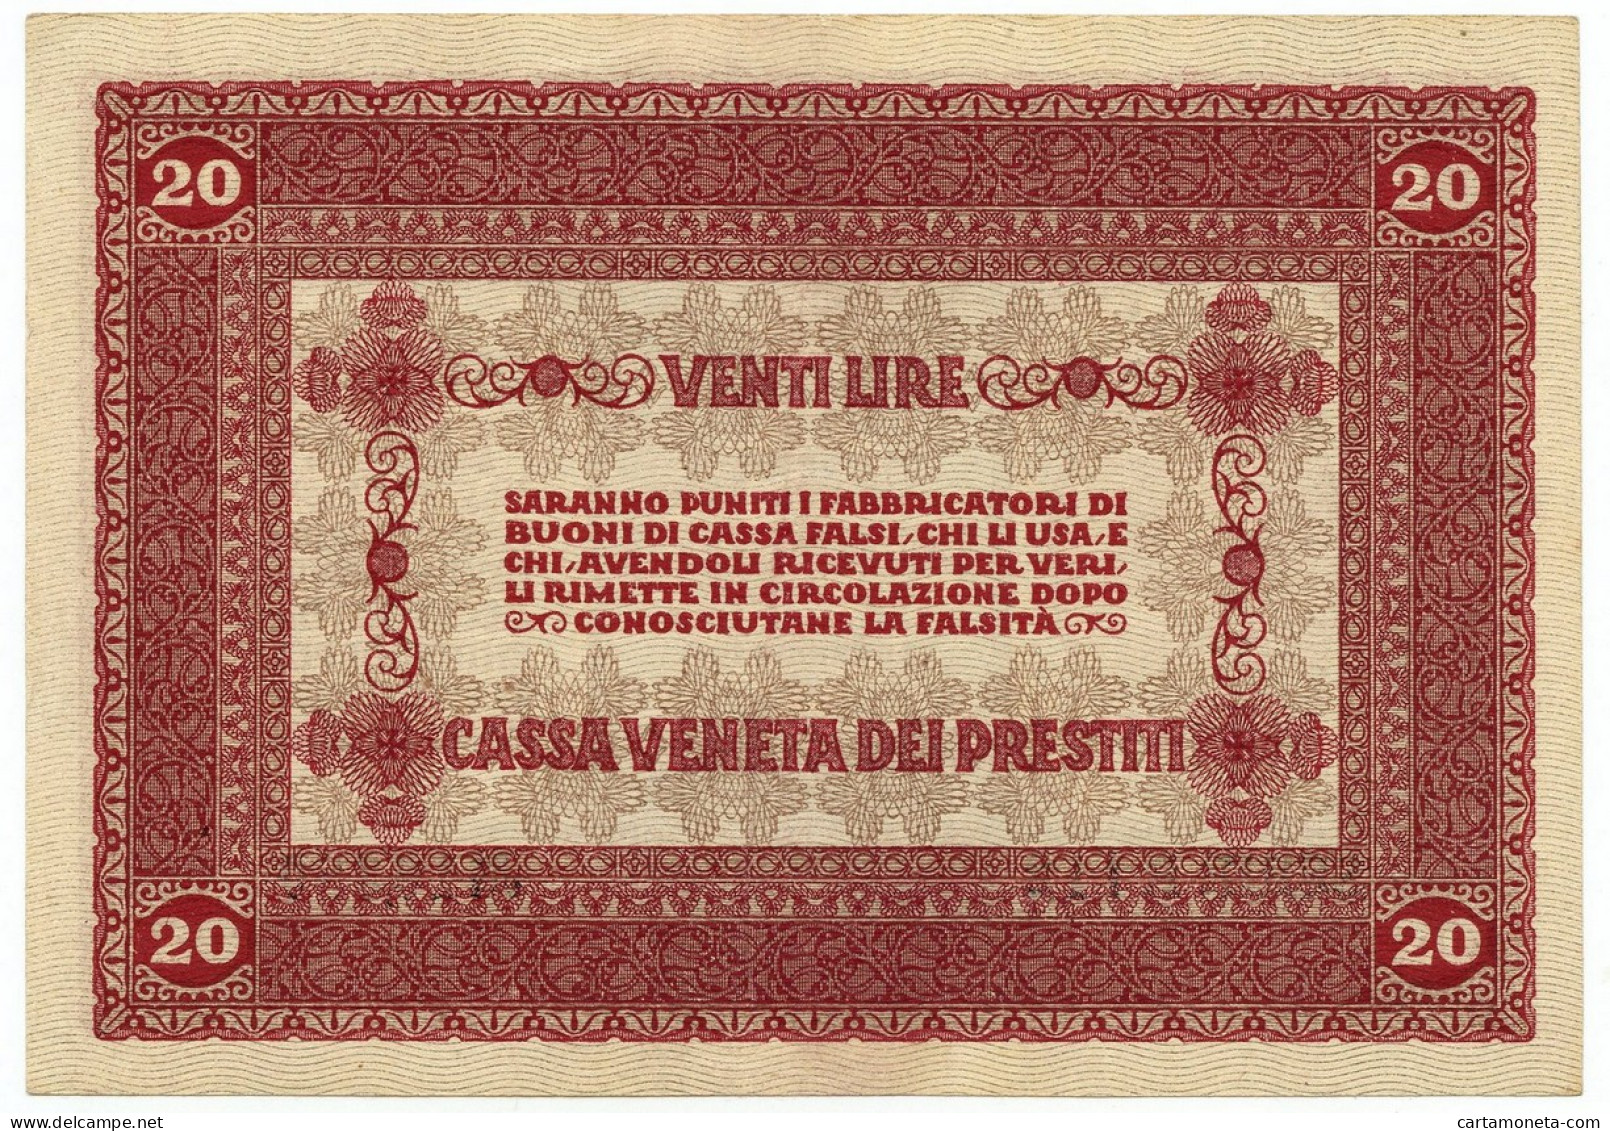 20 LIRE CASSA VENETA DEI PRESTITI OCCUPAZIONE AUSTRIACA 02/01/1918 SPL - Austrian Occupation Of Venezia